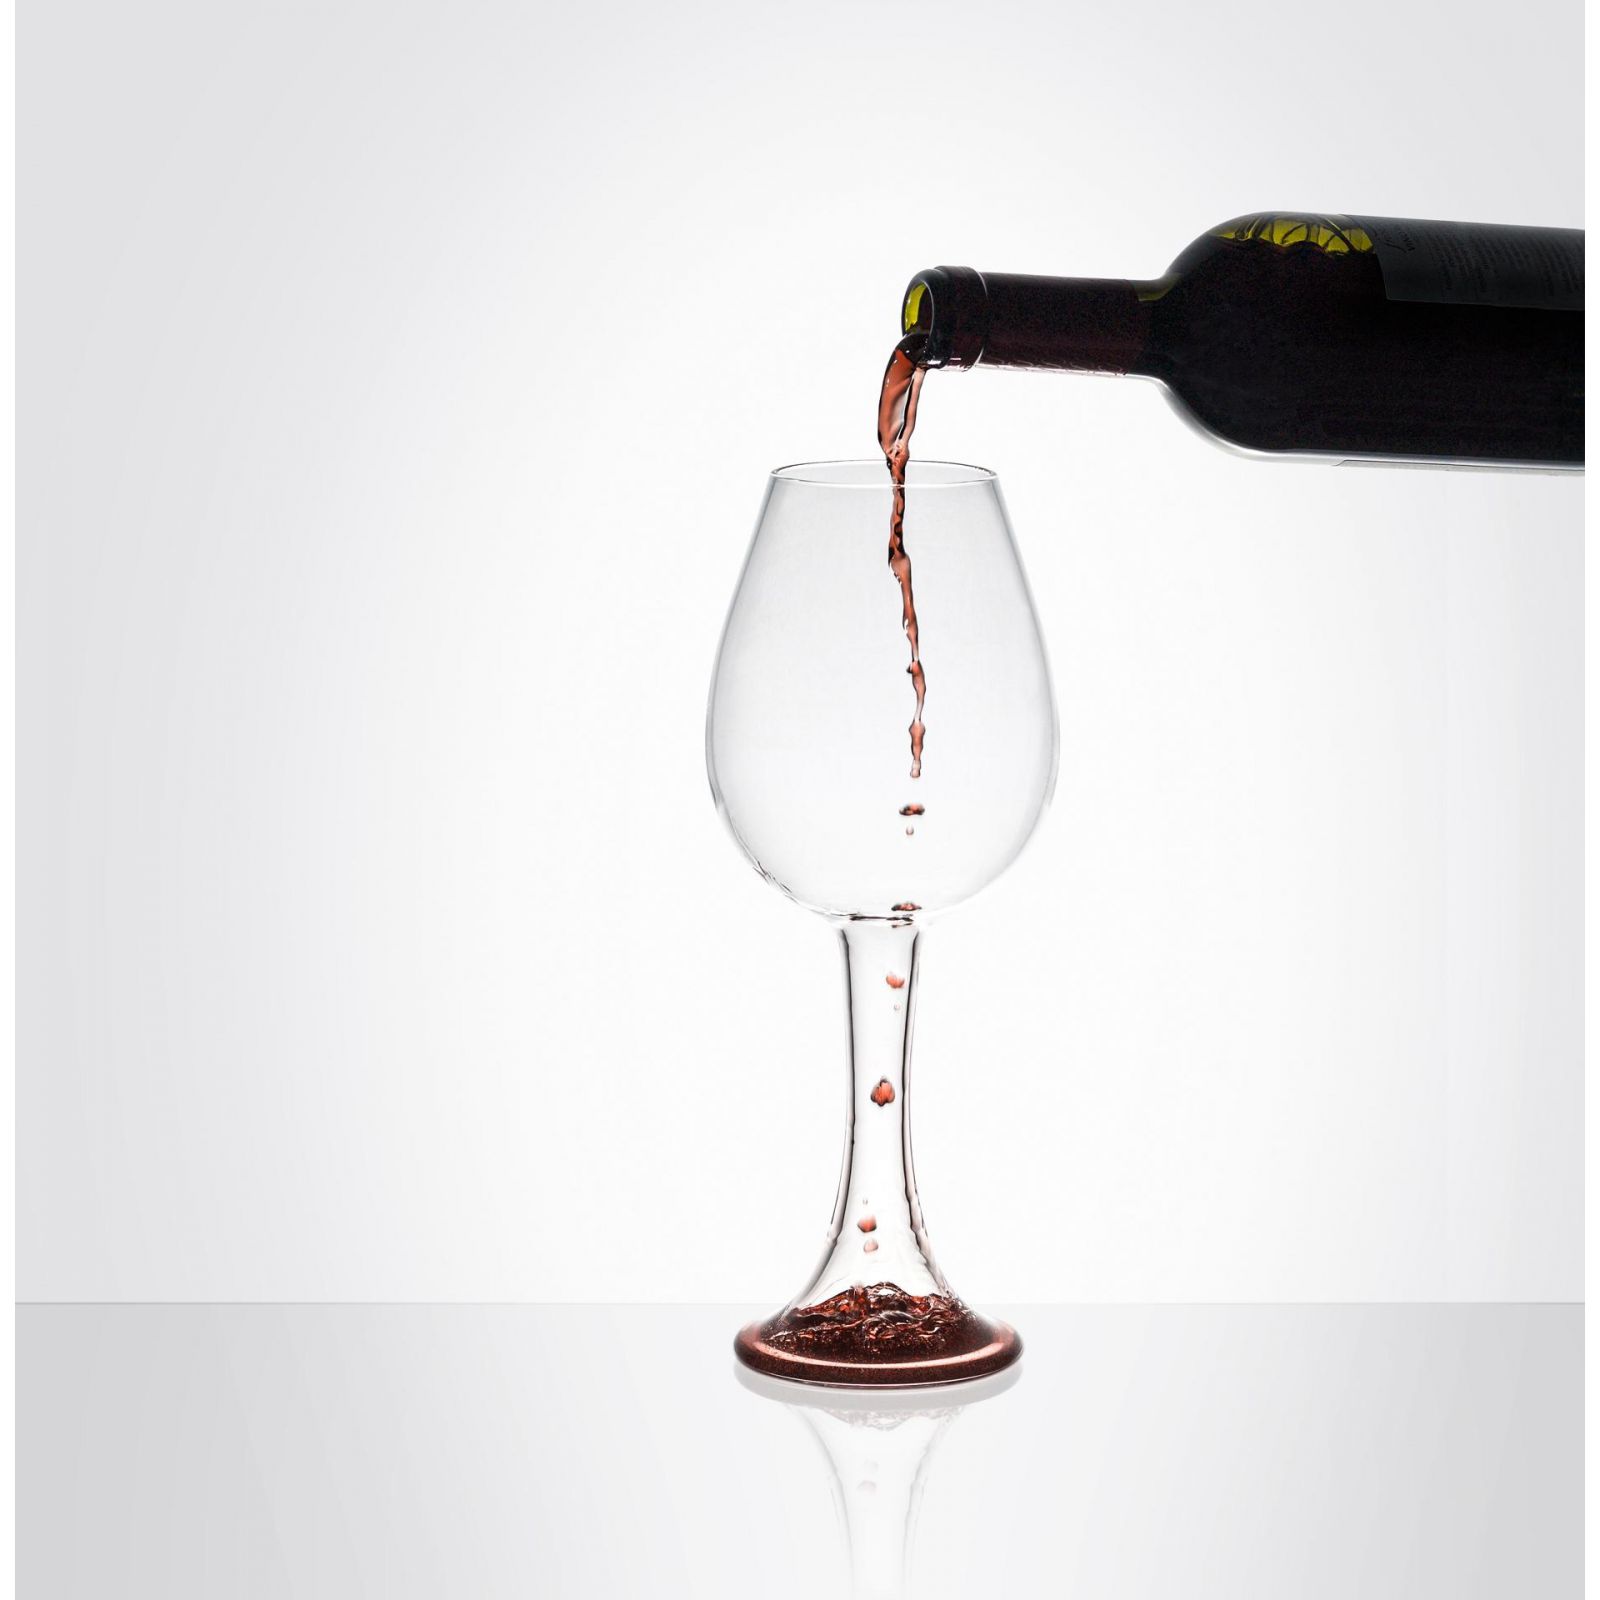 BOTERO - Calice di vino - Italian Design Contract